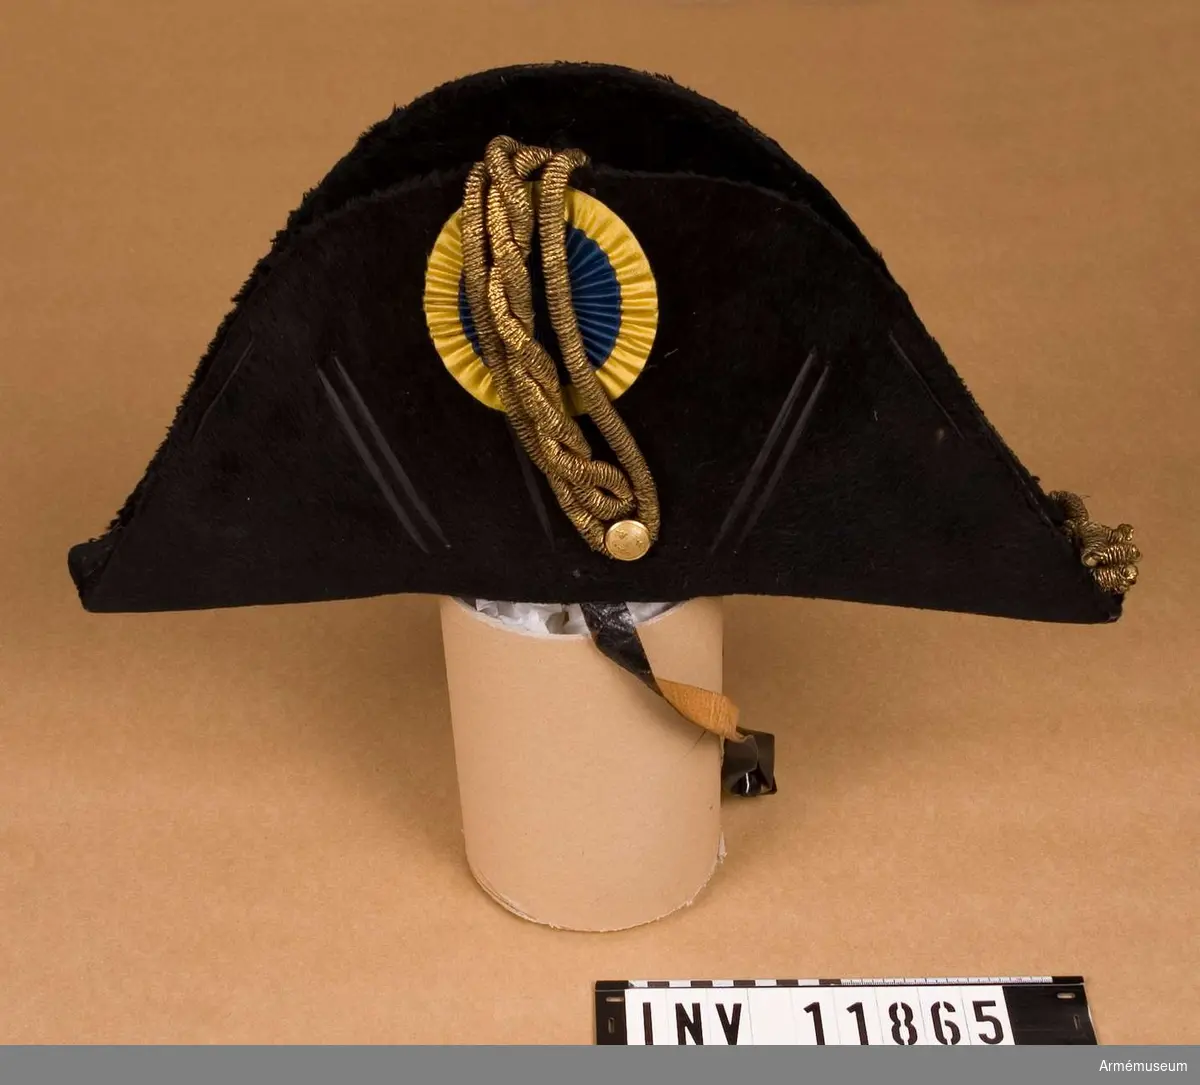 Grupp C I.
Trekantig officershatt 1800-talet förra hälft.